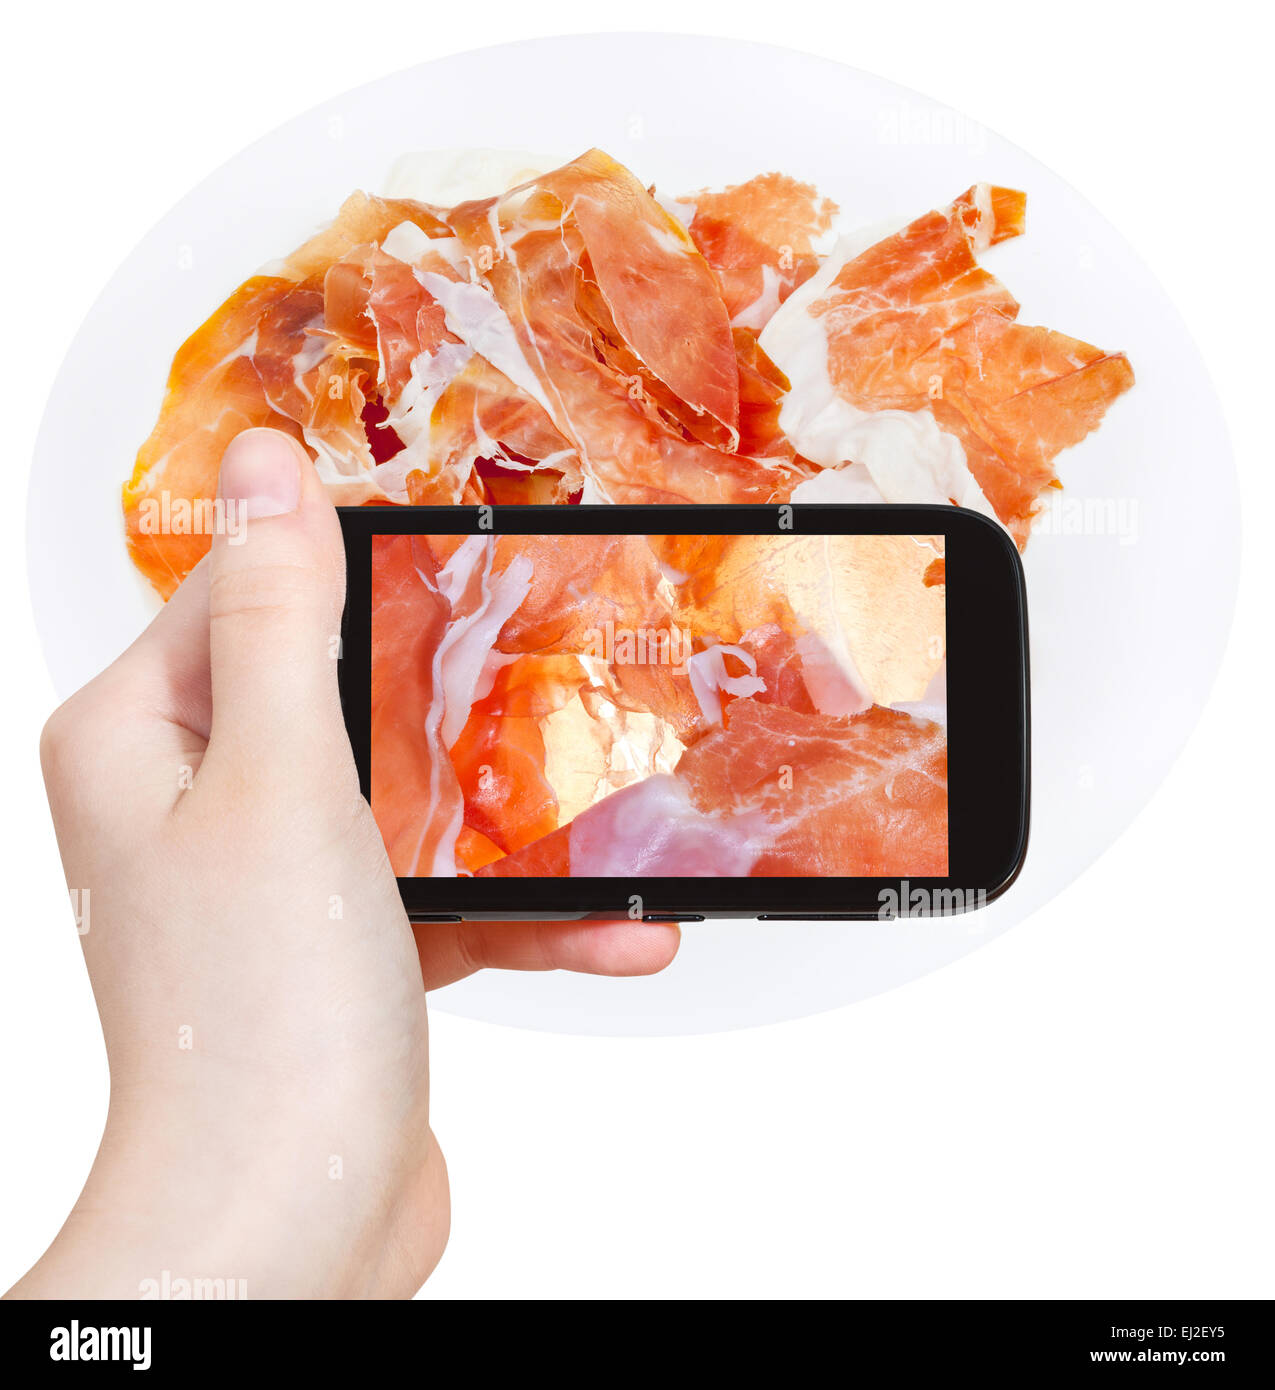 Fotografieren Essenskonzept - Tourist nimmt Bild italienischer geschnitten Schinken Prosciutto di Parma auf Smartphone, Italien Stockfoto